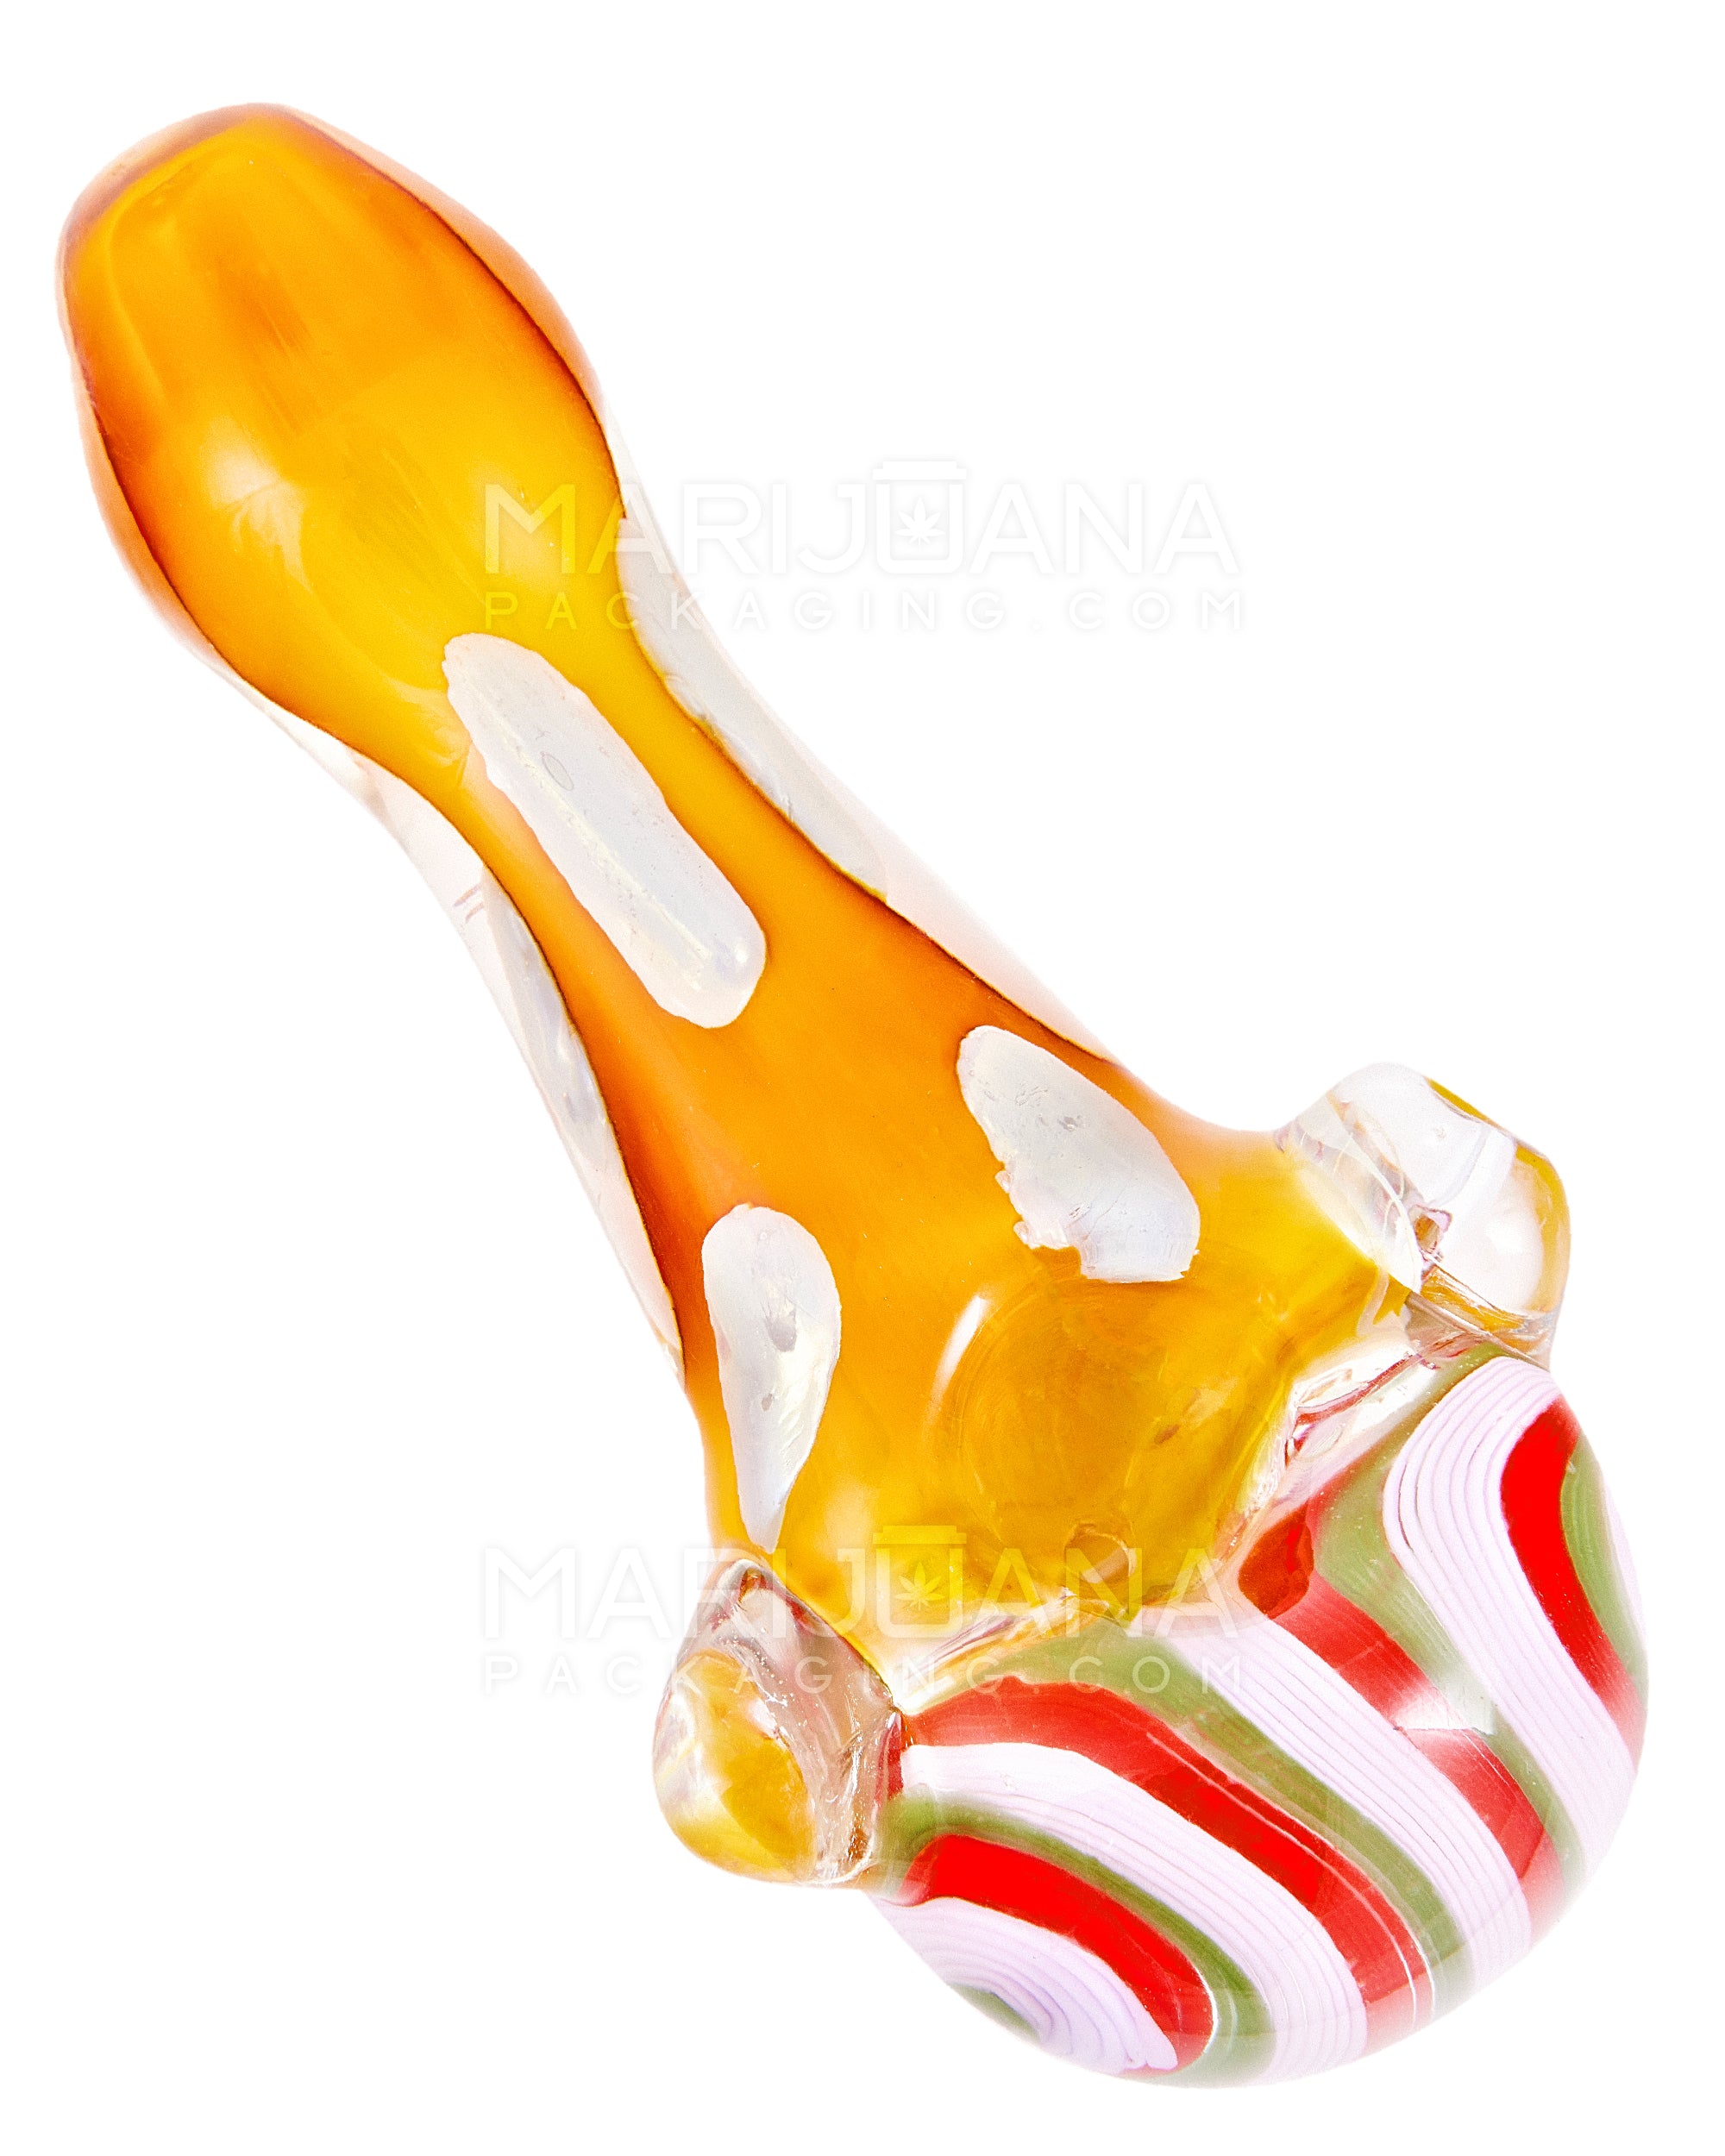 Swirl & Fumed Spoon Hand Pipe w/ Speckles & Knocker | 5in Long - Glass - Assorted - 6